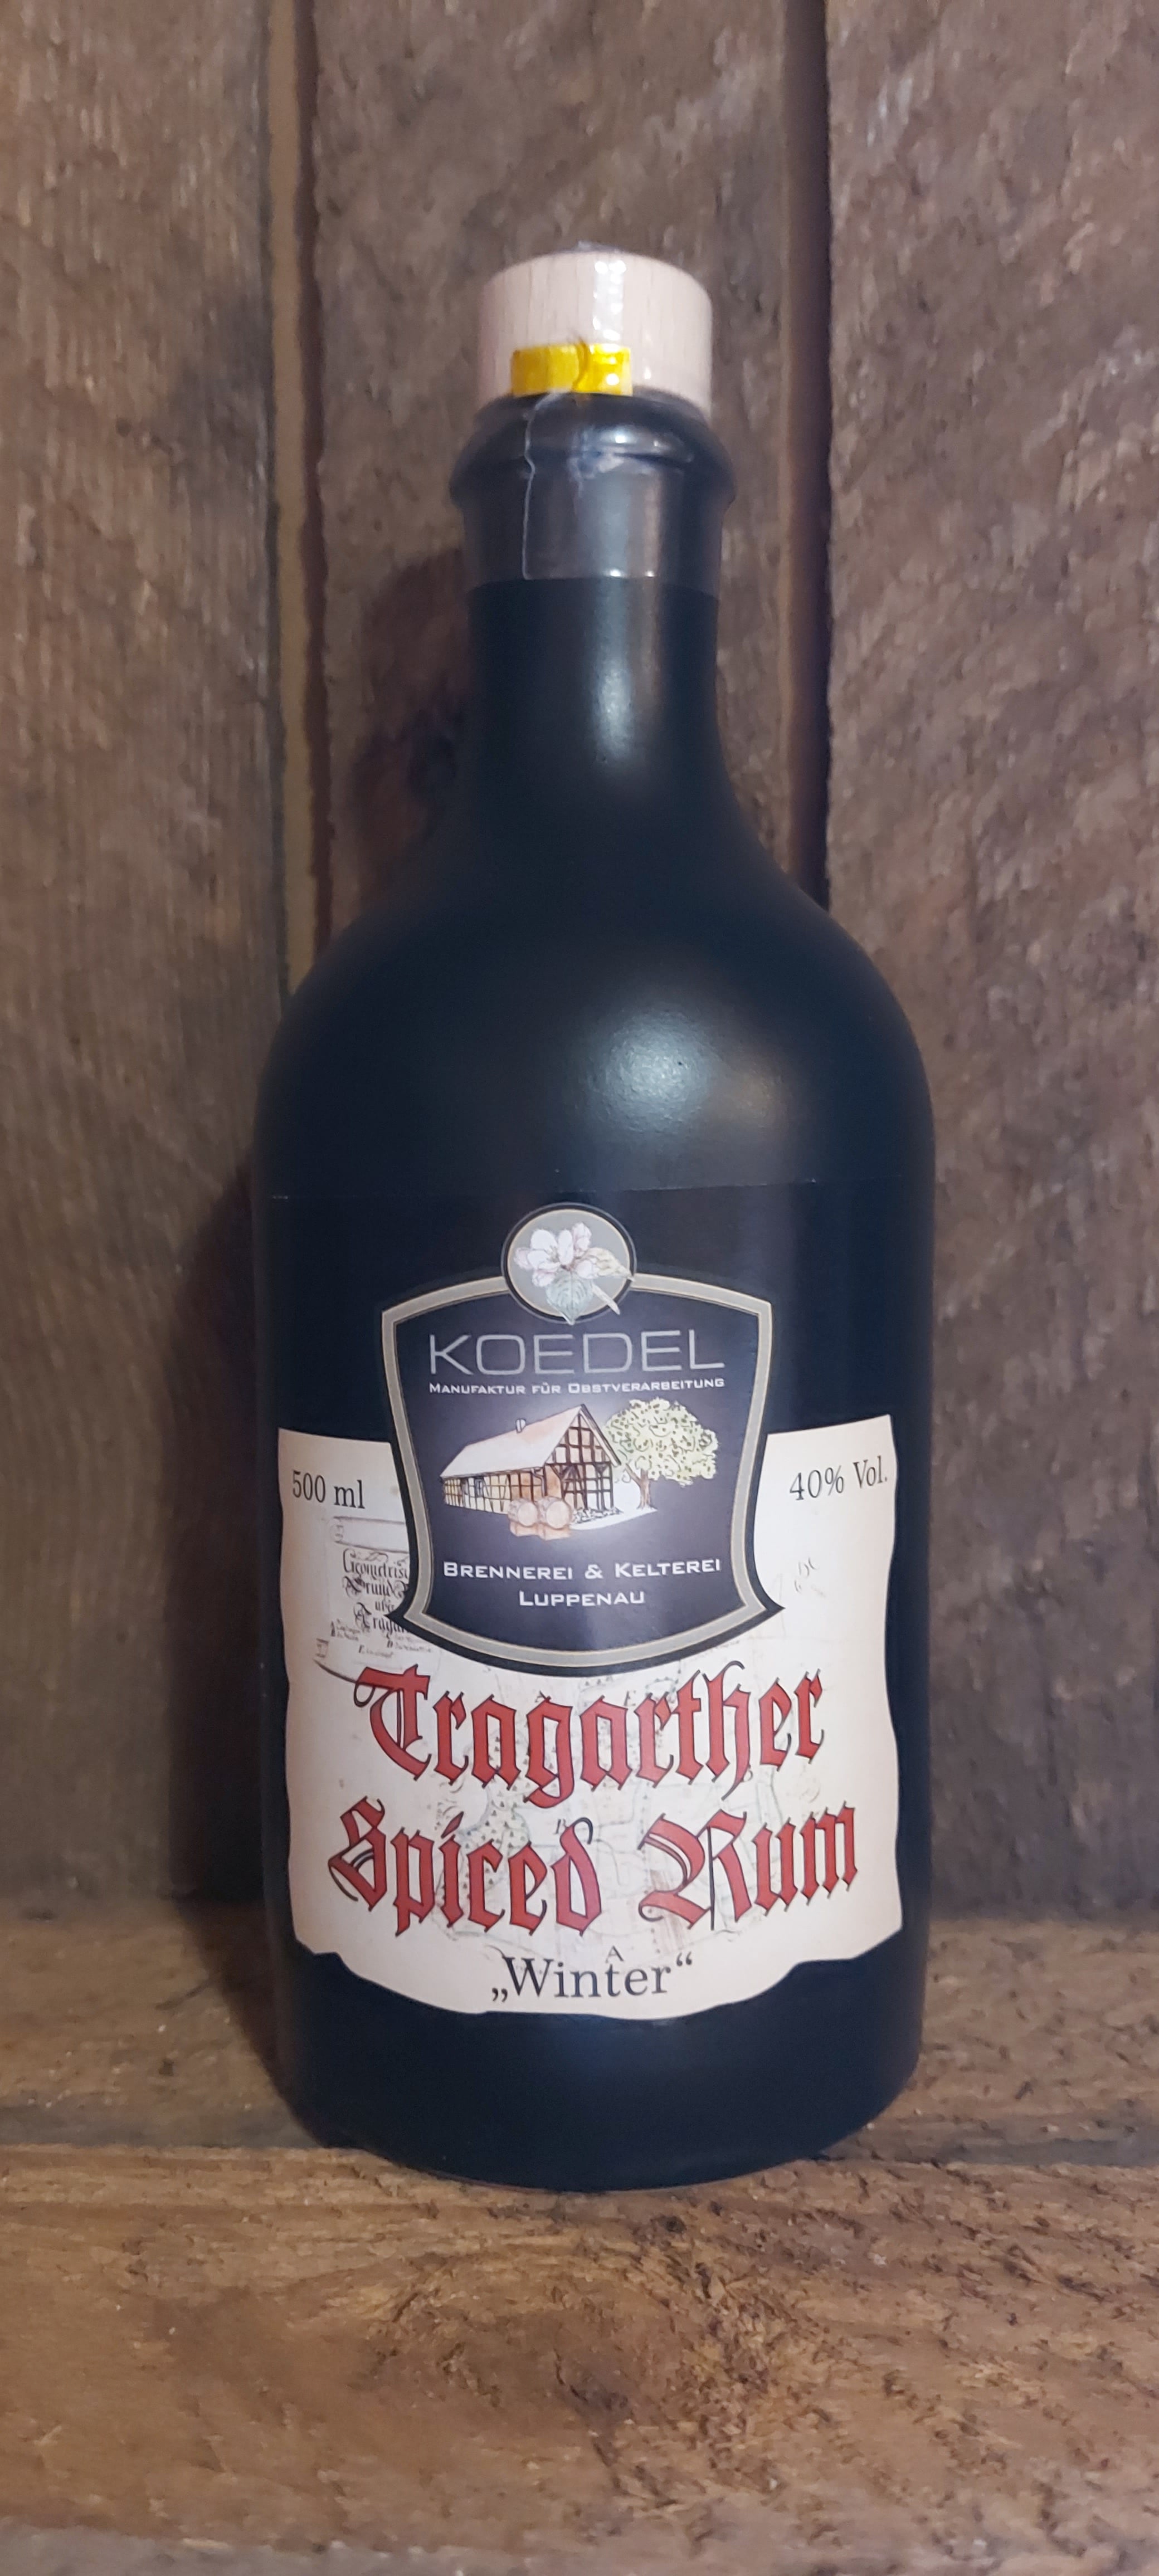 Tragarther Spiced Rum, Winter 500 ml